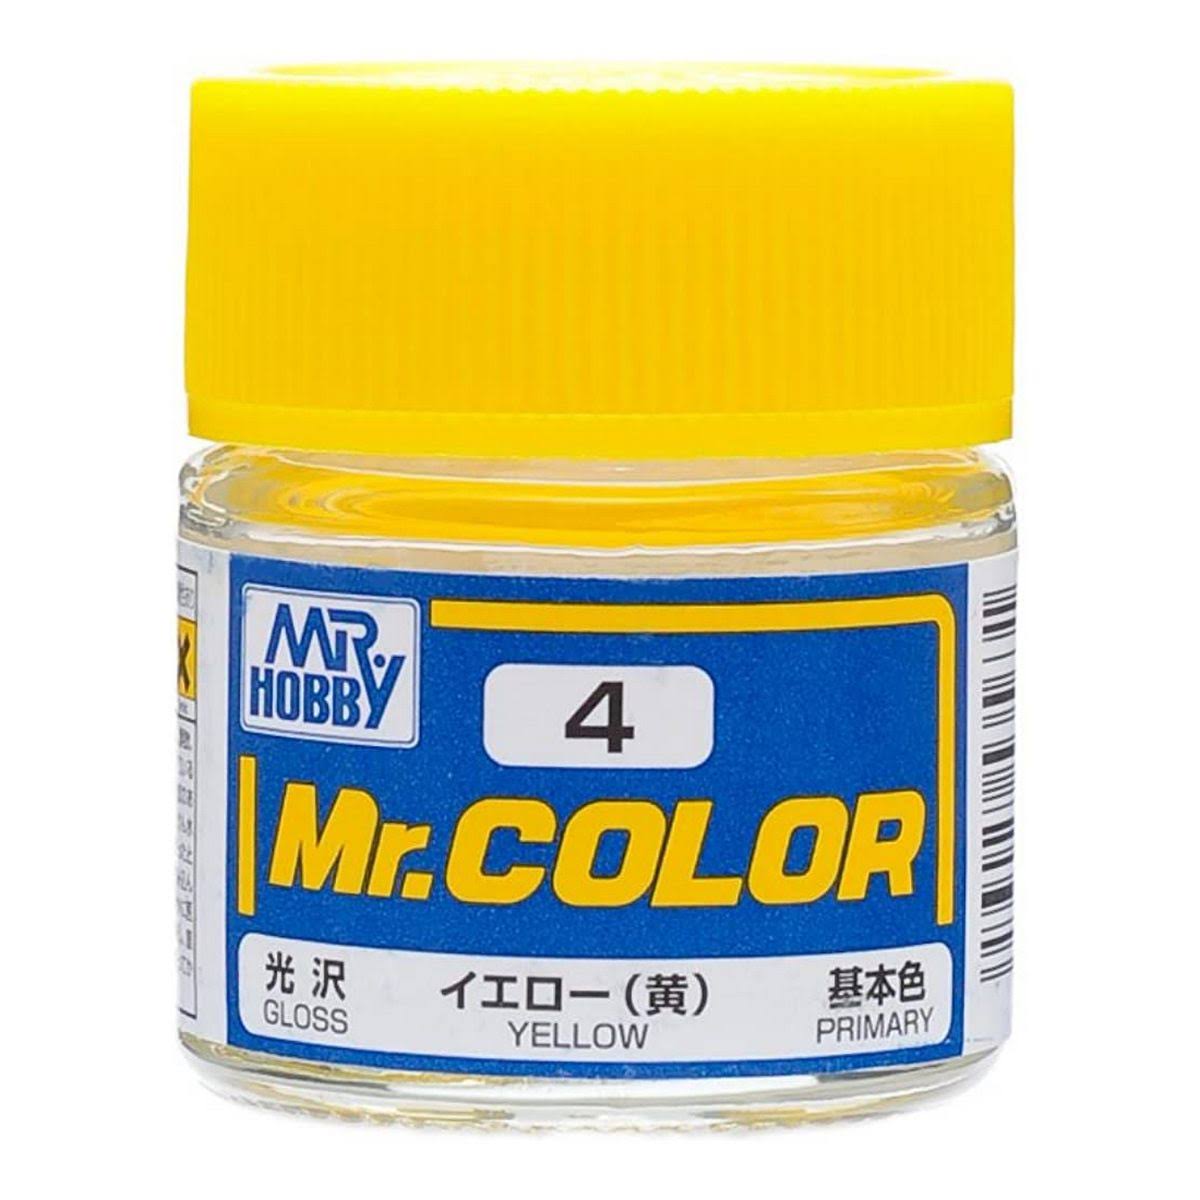 Mr. Hobby C4 Gloss Yellow 10ml Bottle, GSI Mr. Color